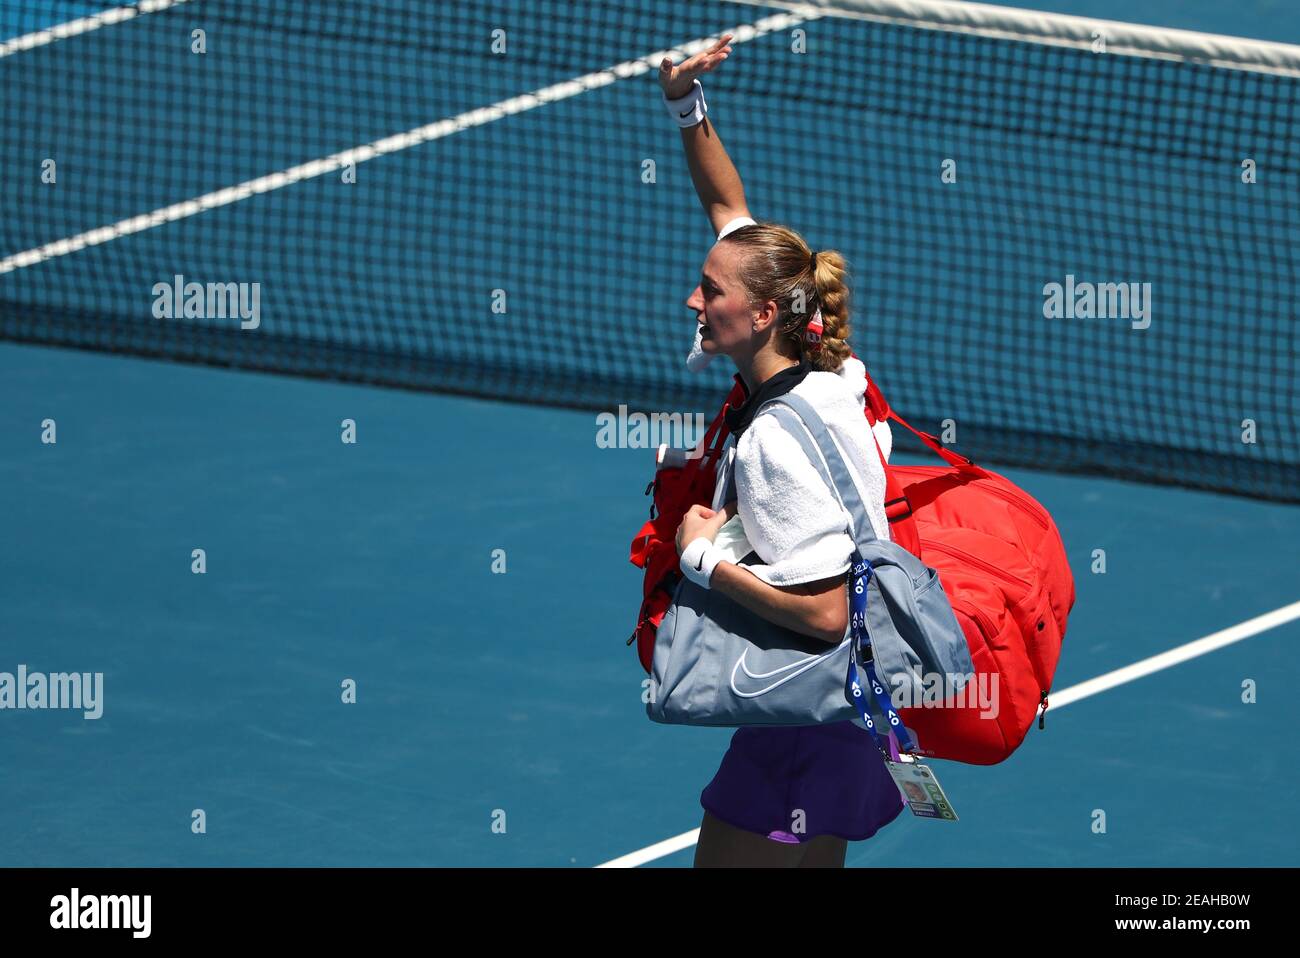 Sorana cirstea tenis fotografías e imágenes de alta resolución - Página 3 -  Alamy